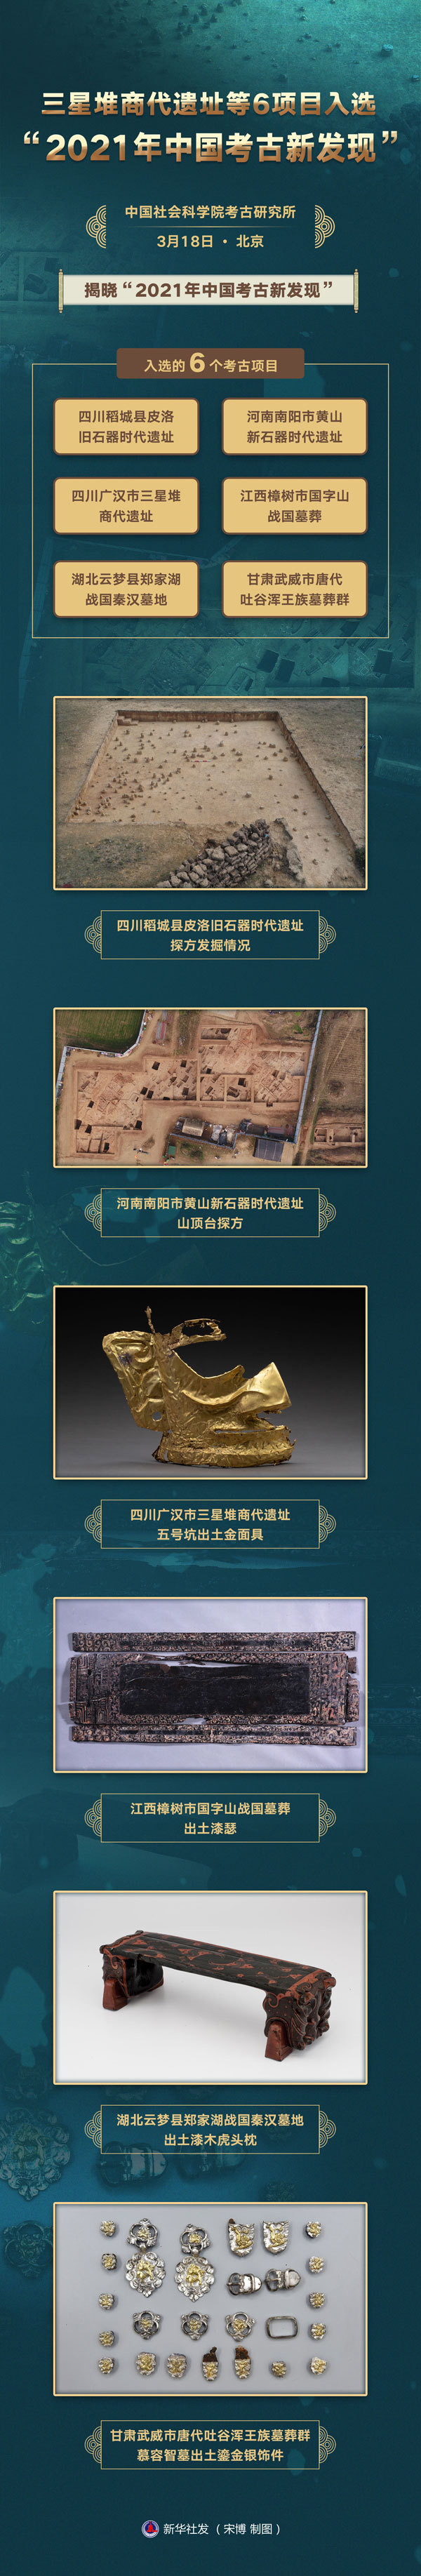 三星堆等6项目入选“2021年中国考古新发现”